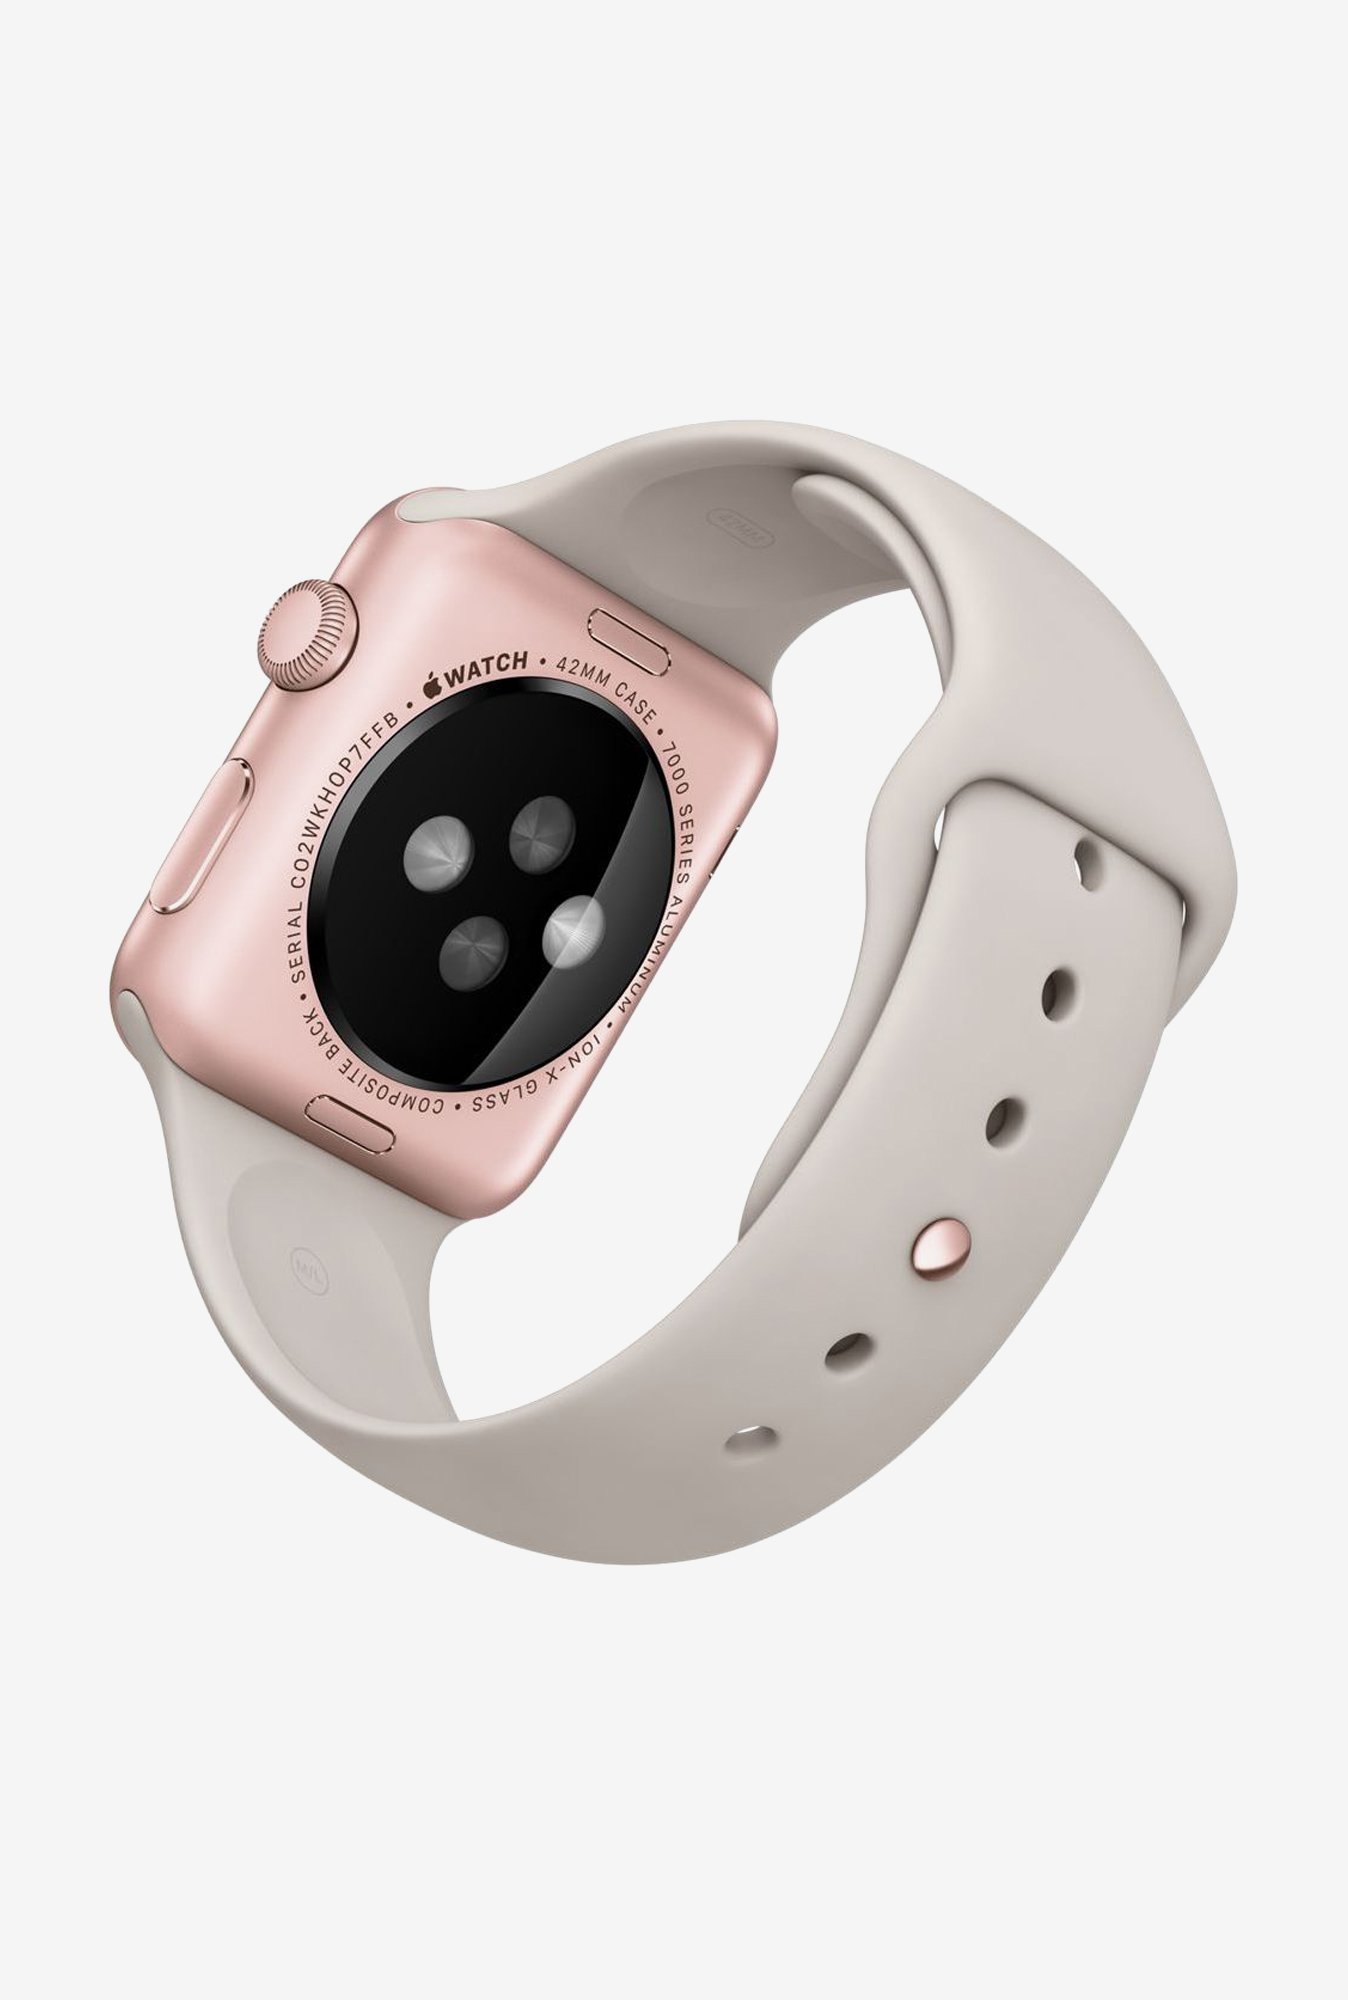 Apple watch sport цена. Apple watch 7000 Series 42 mm. Apple watch Sport 42mm 7000 Series. Apple watch Series 1 42 мм. Часы Apple watch 38mm with Sport Band.